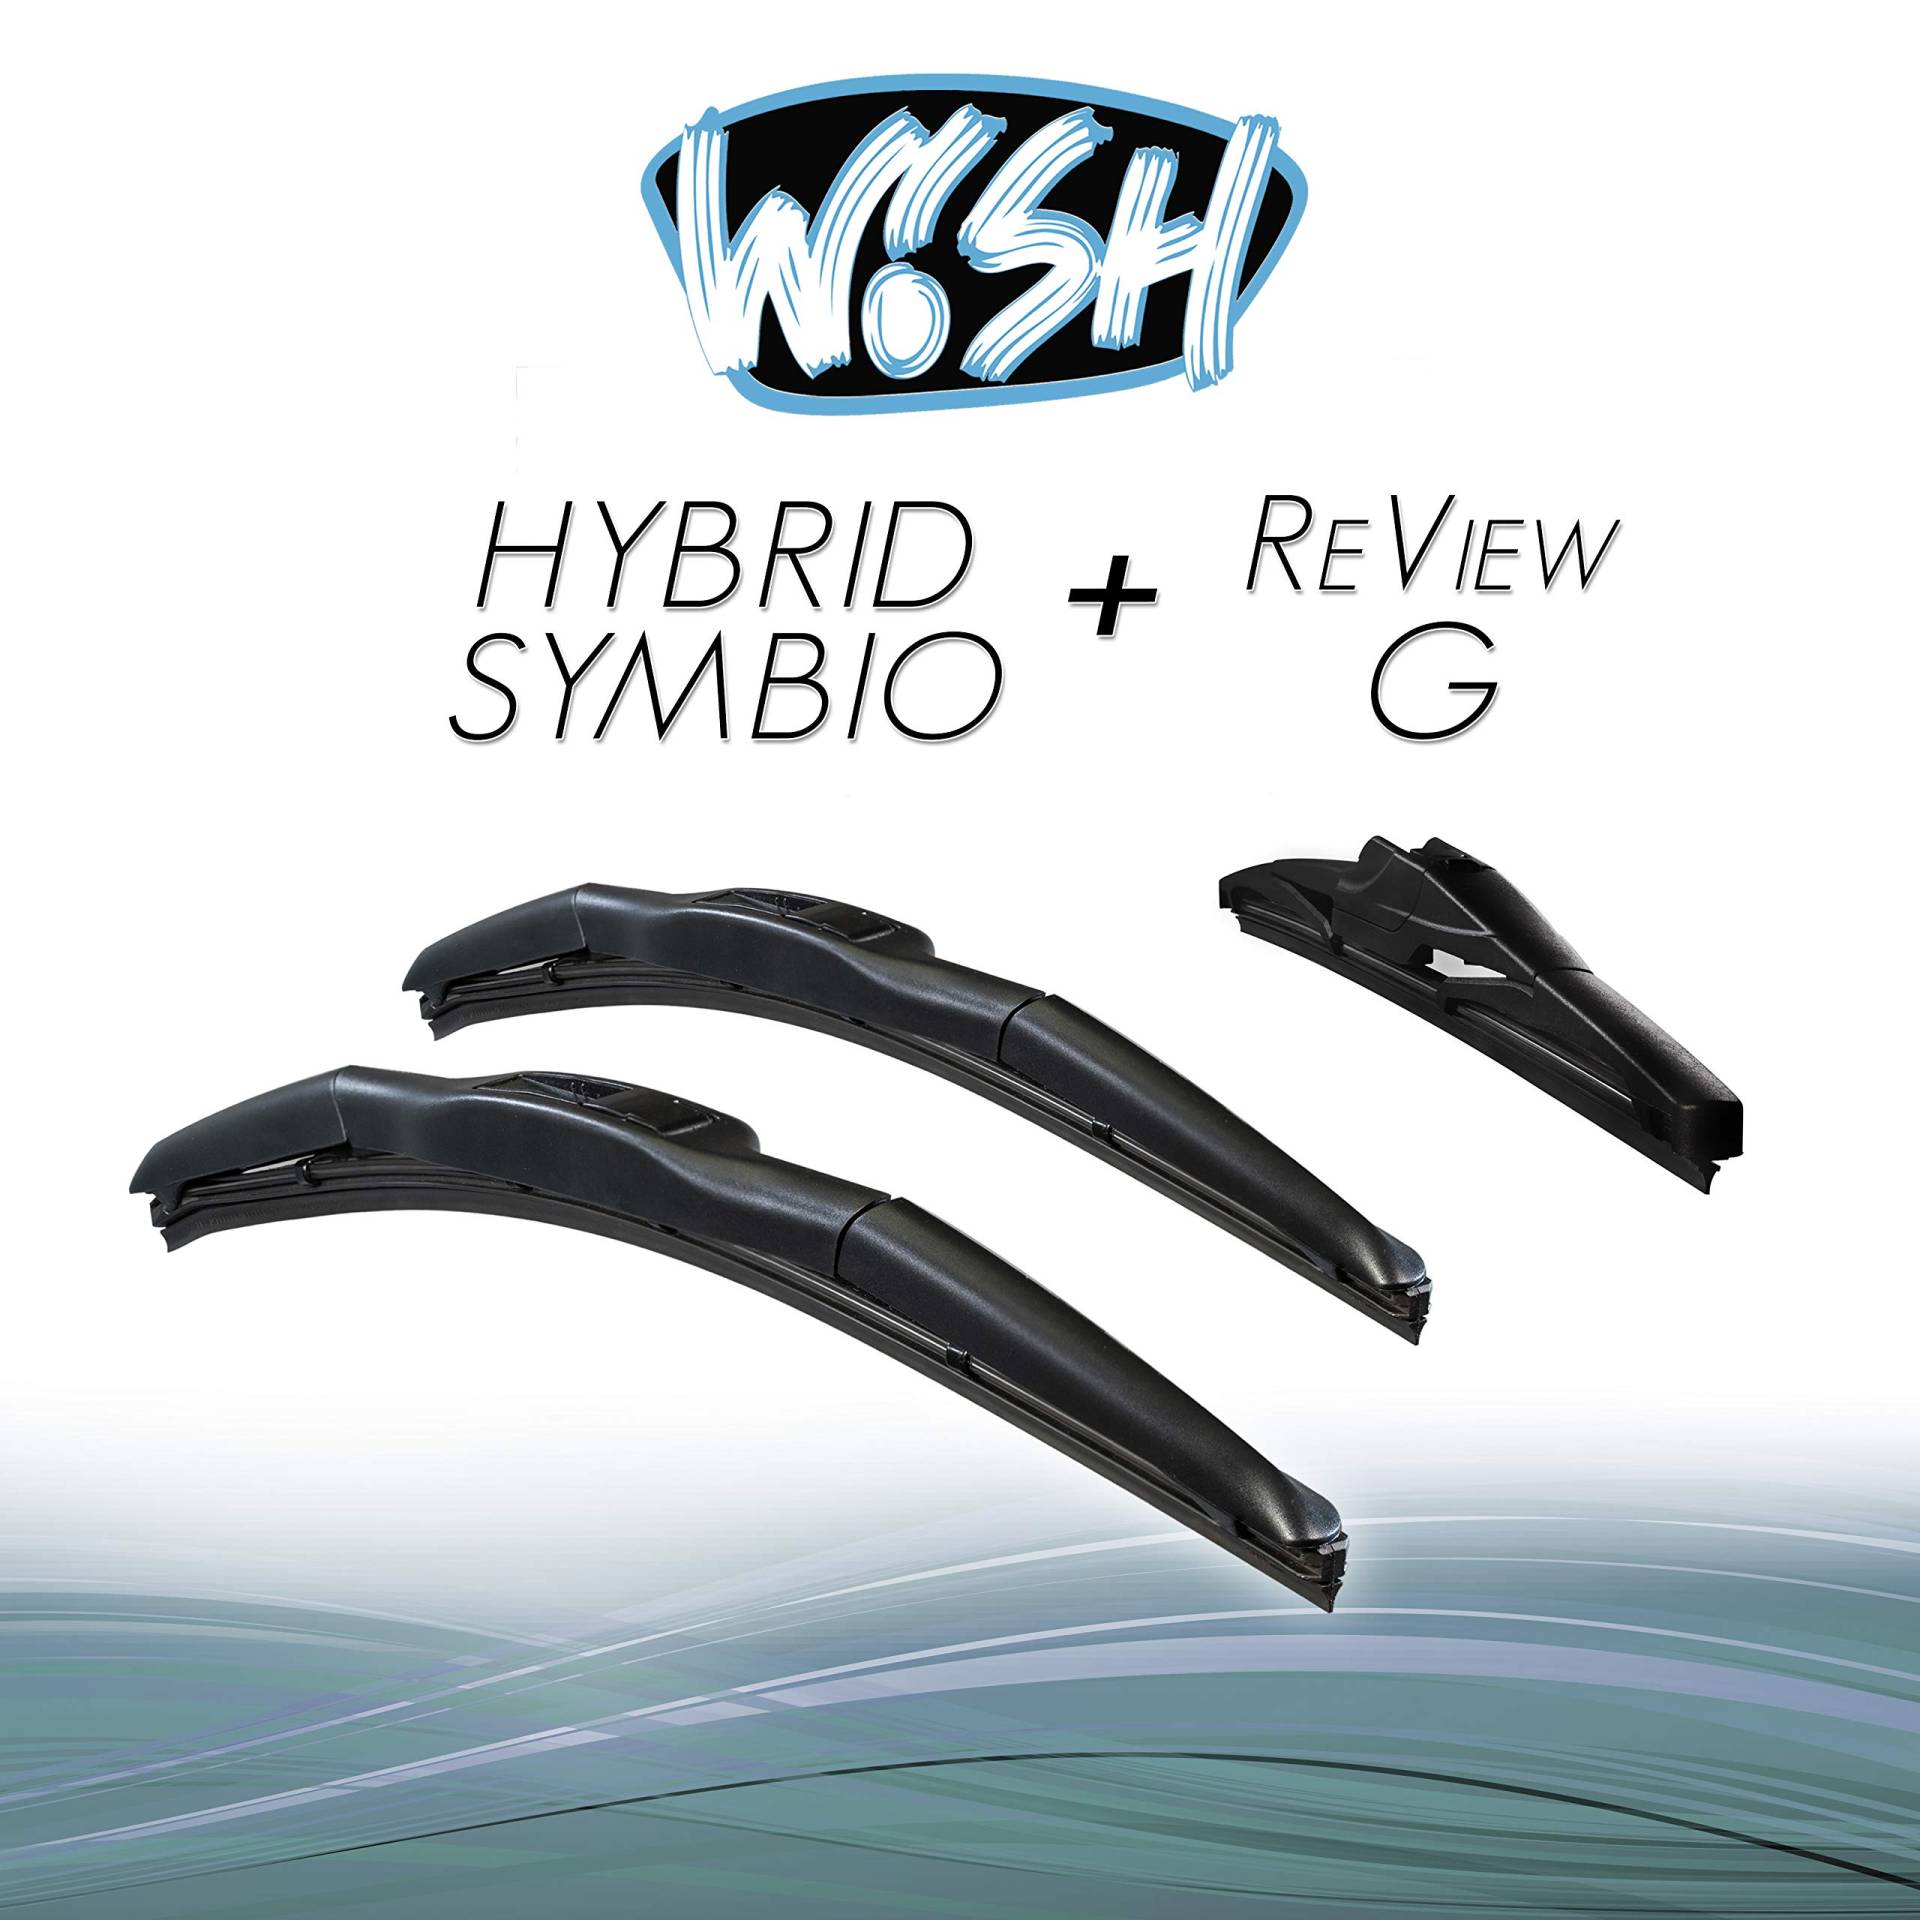 Wish® Hybrid Symbio Satz Front + Heck Scheibenwischer Länge: 24" 600mm / 19" 480mm / 15" 380mm Wischblätter Vorne und Hinten Hybrid-Scheibenwischer + Review G HS24.19.15RG von Wish